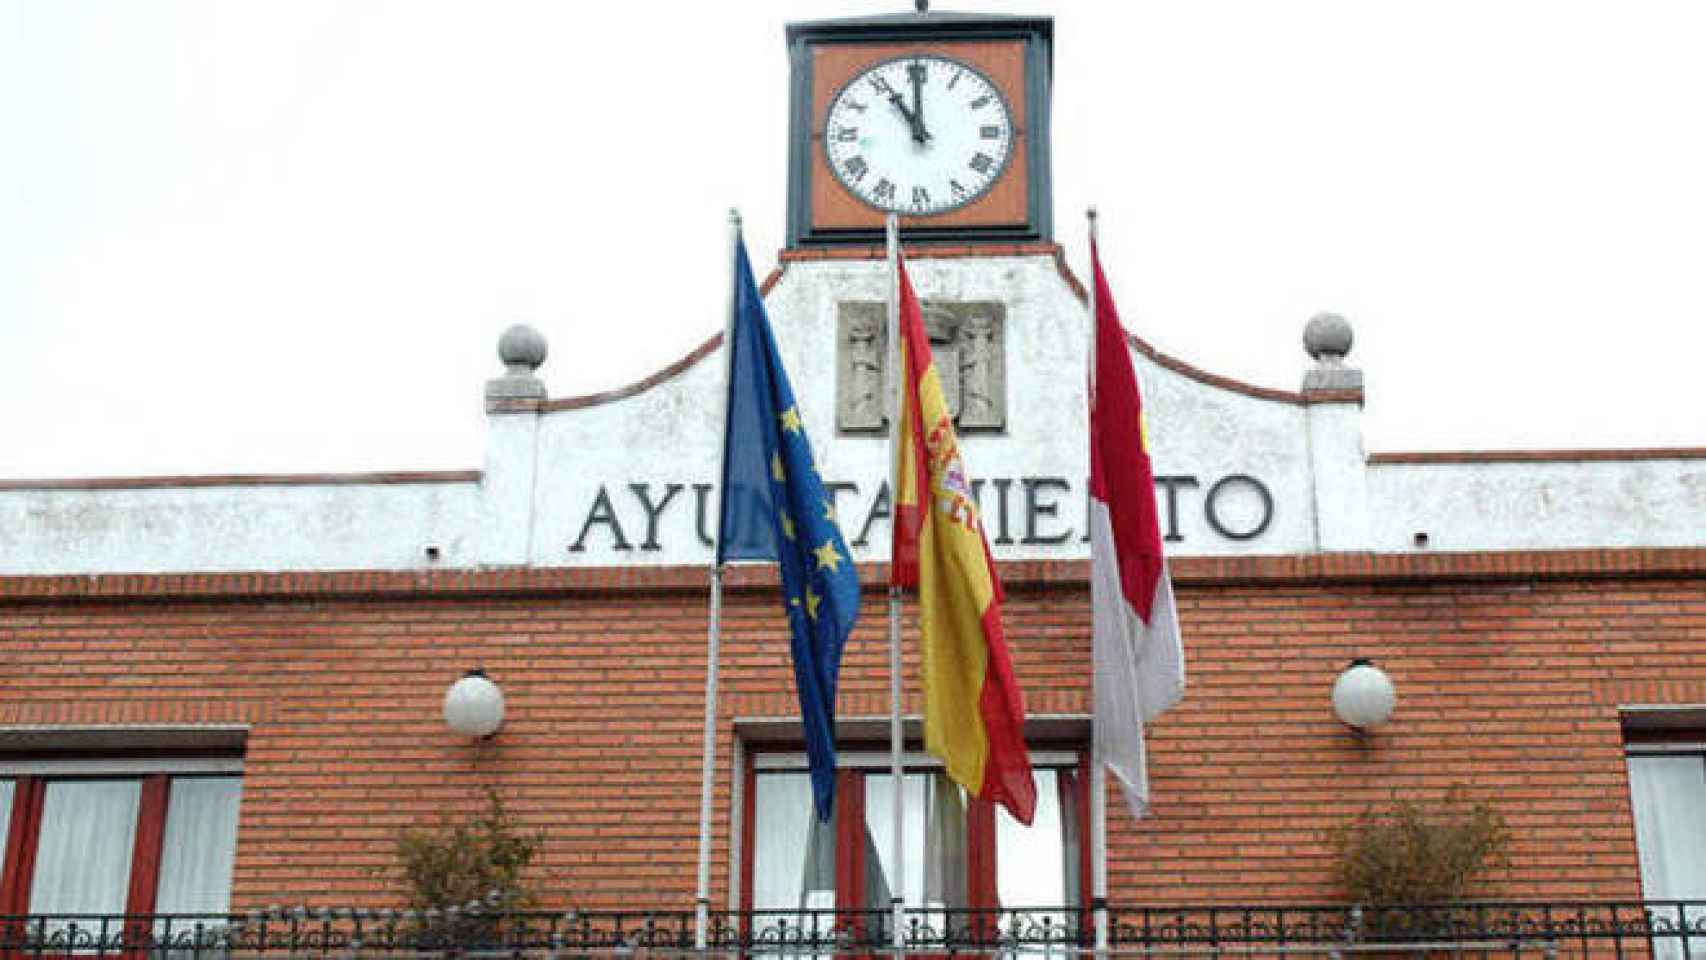 FOTO: Ayuntamiento de Azuqueca.